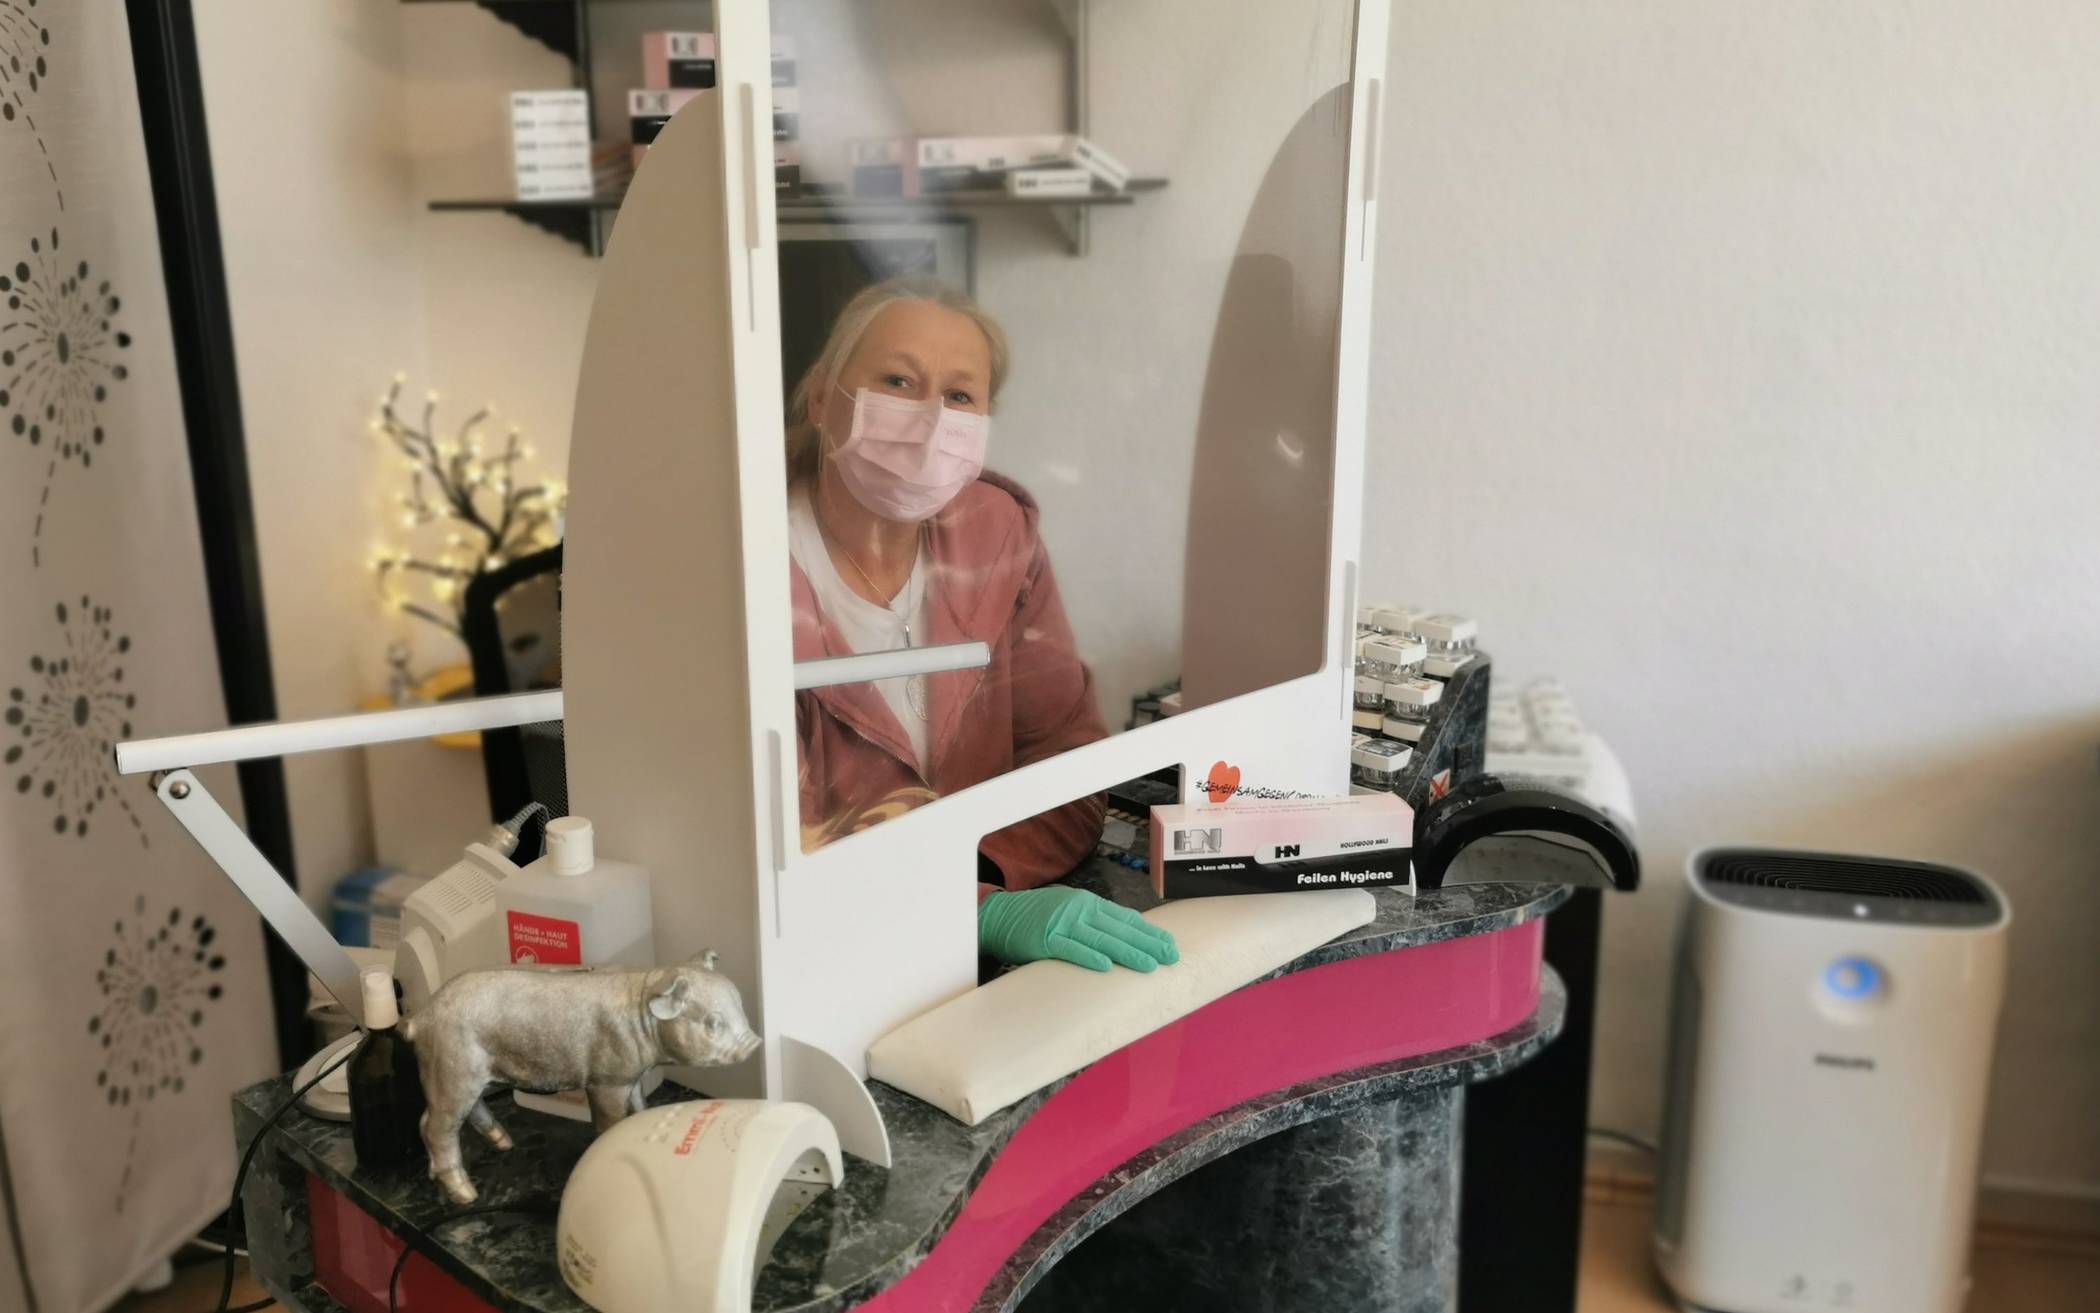  Hygiene-Schutzwand, Gesichtsmaske, Einweghandschuhe und Luftreiniger (rechts unten): Nagelstudio-Betreiberin Barbara Melchior hat aufgerüstet.   